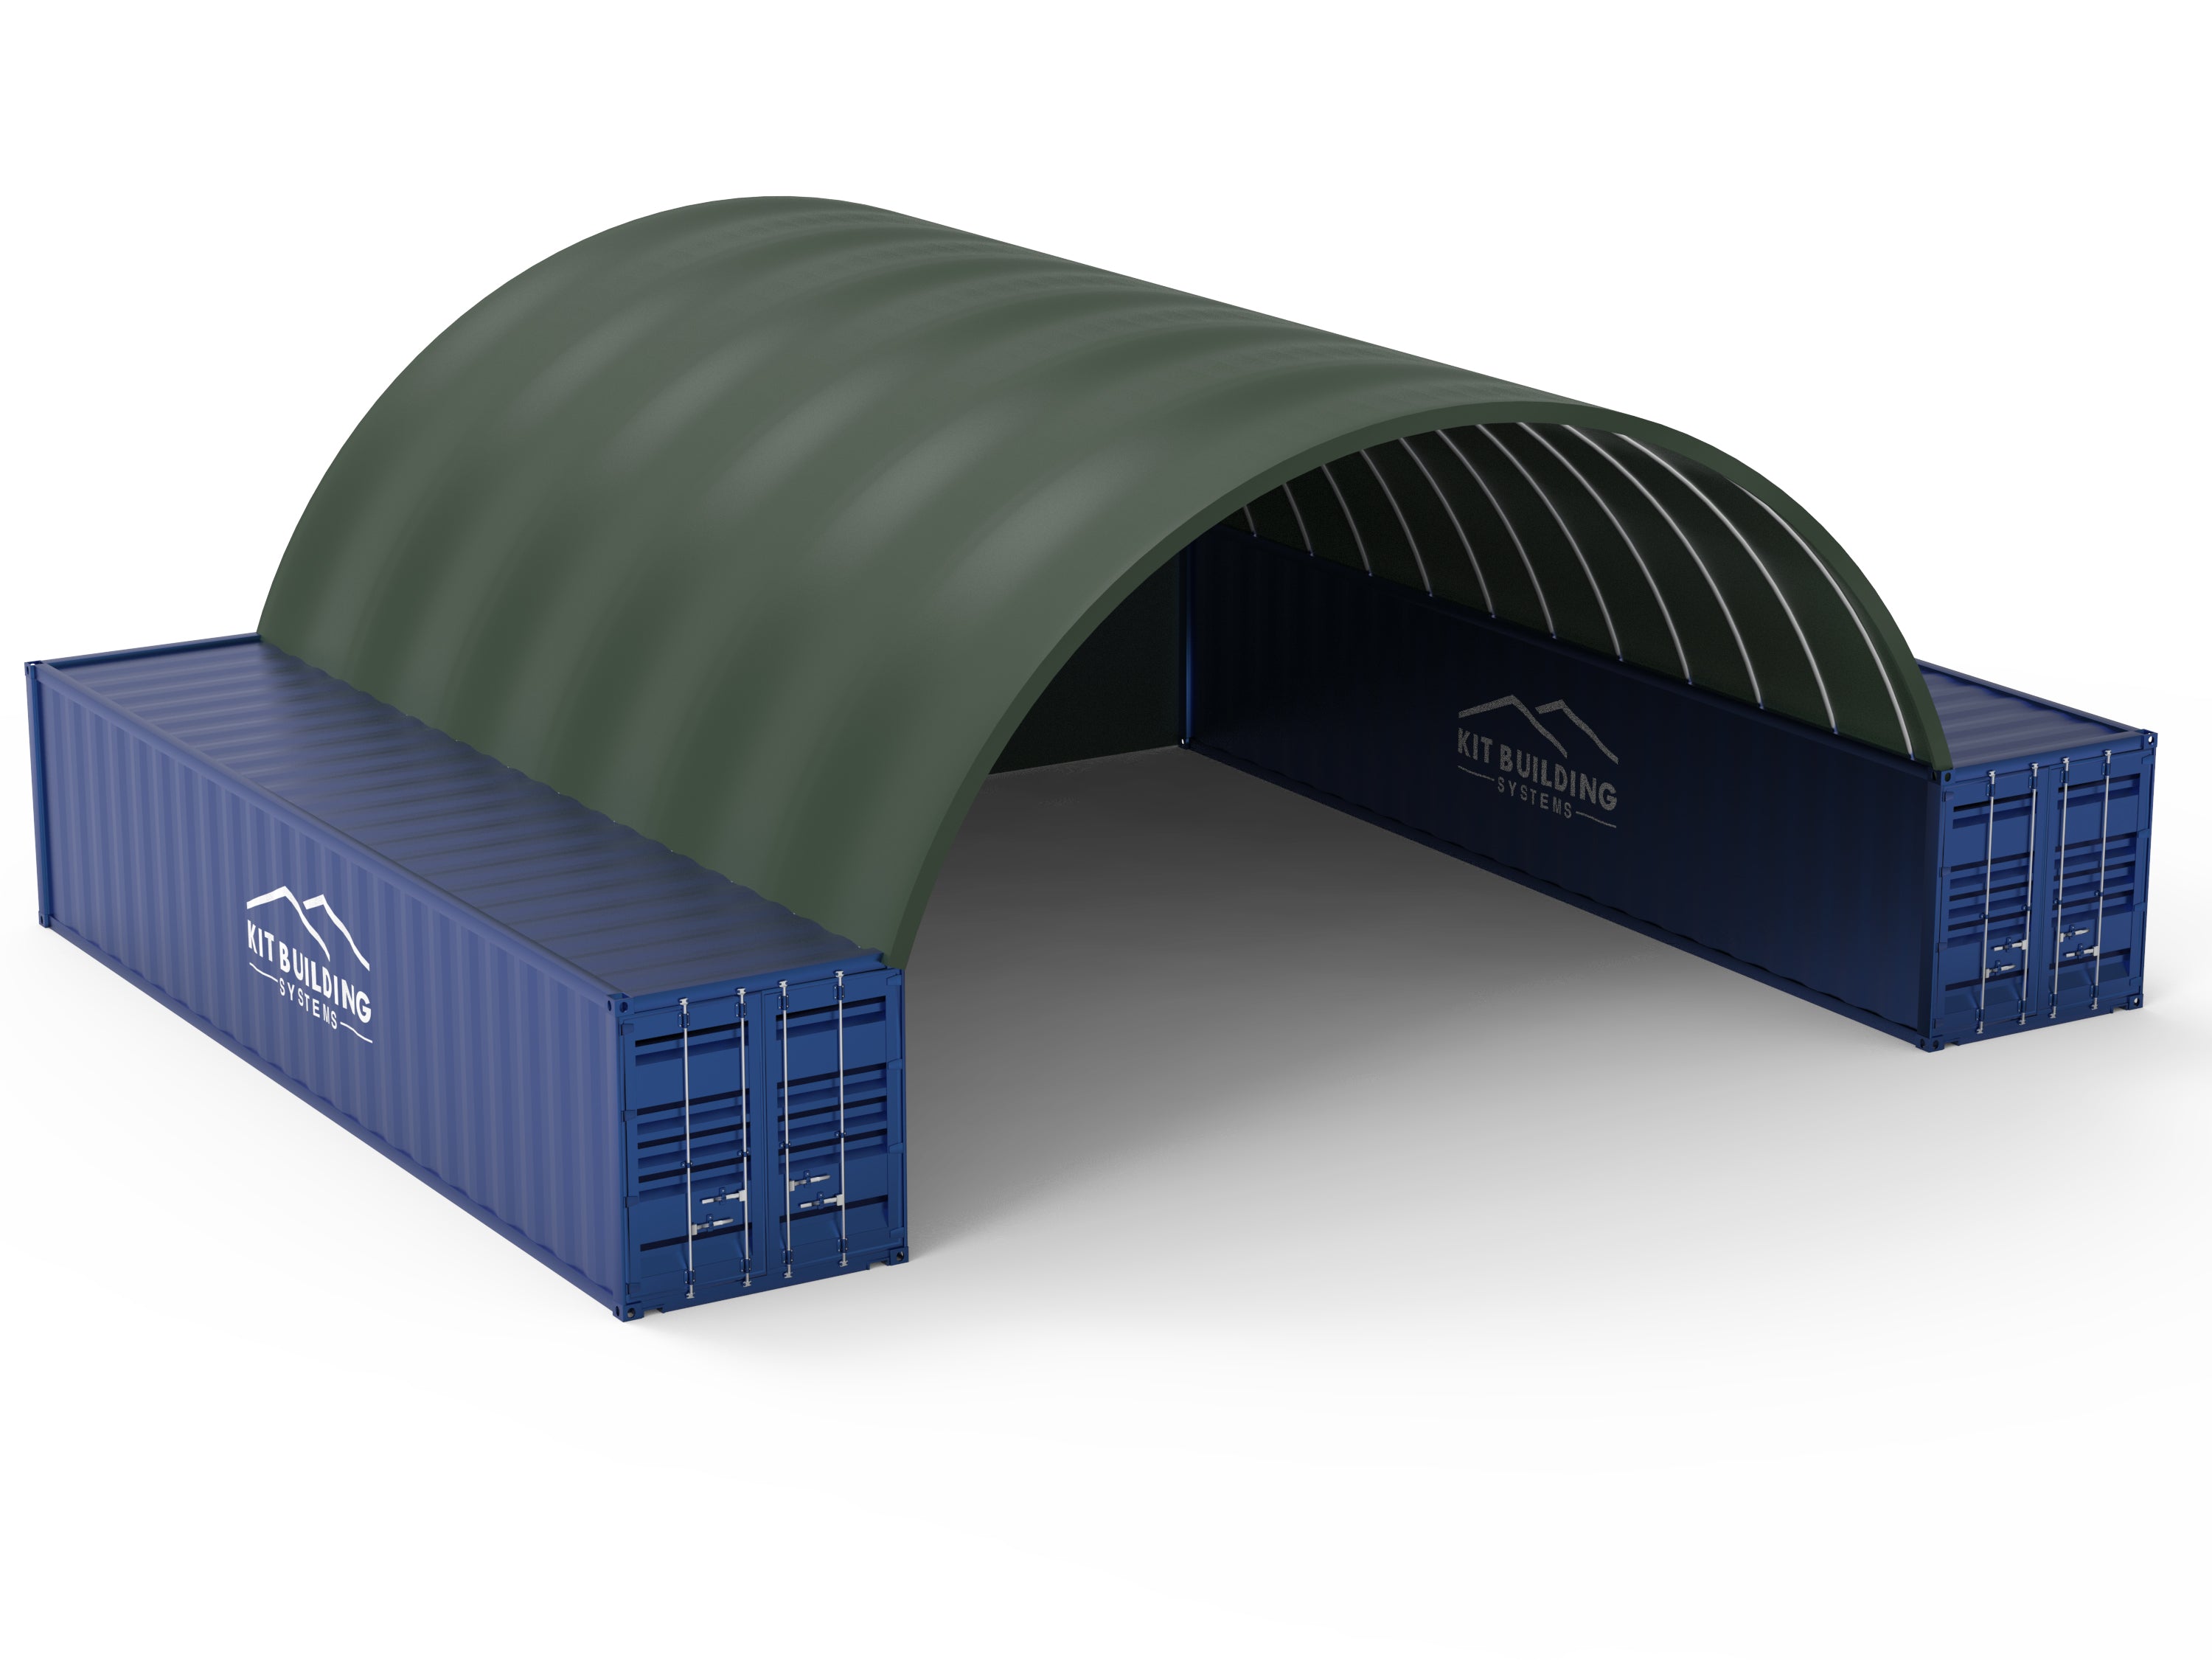 Container Shelter - 33ft x 40ft x 12ft (10m x 12m x 3.6m) - Kit Buildings